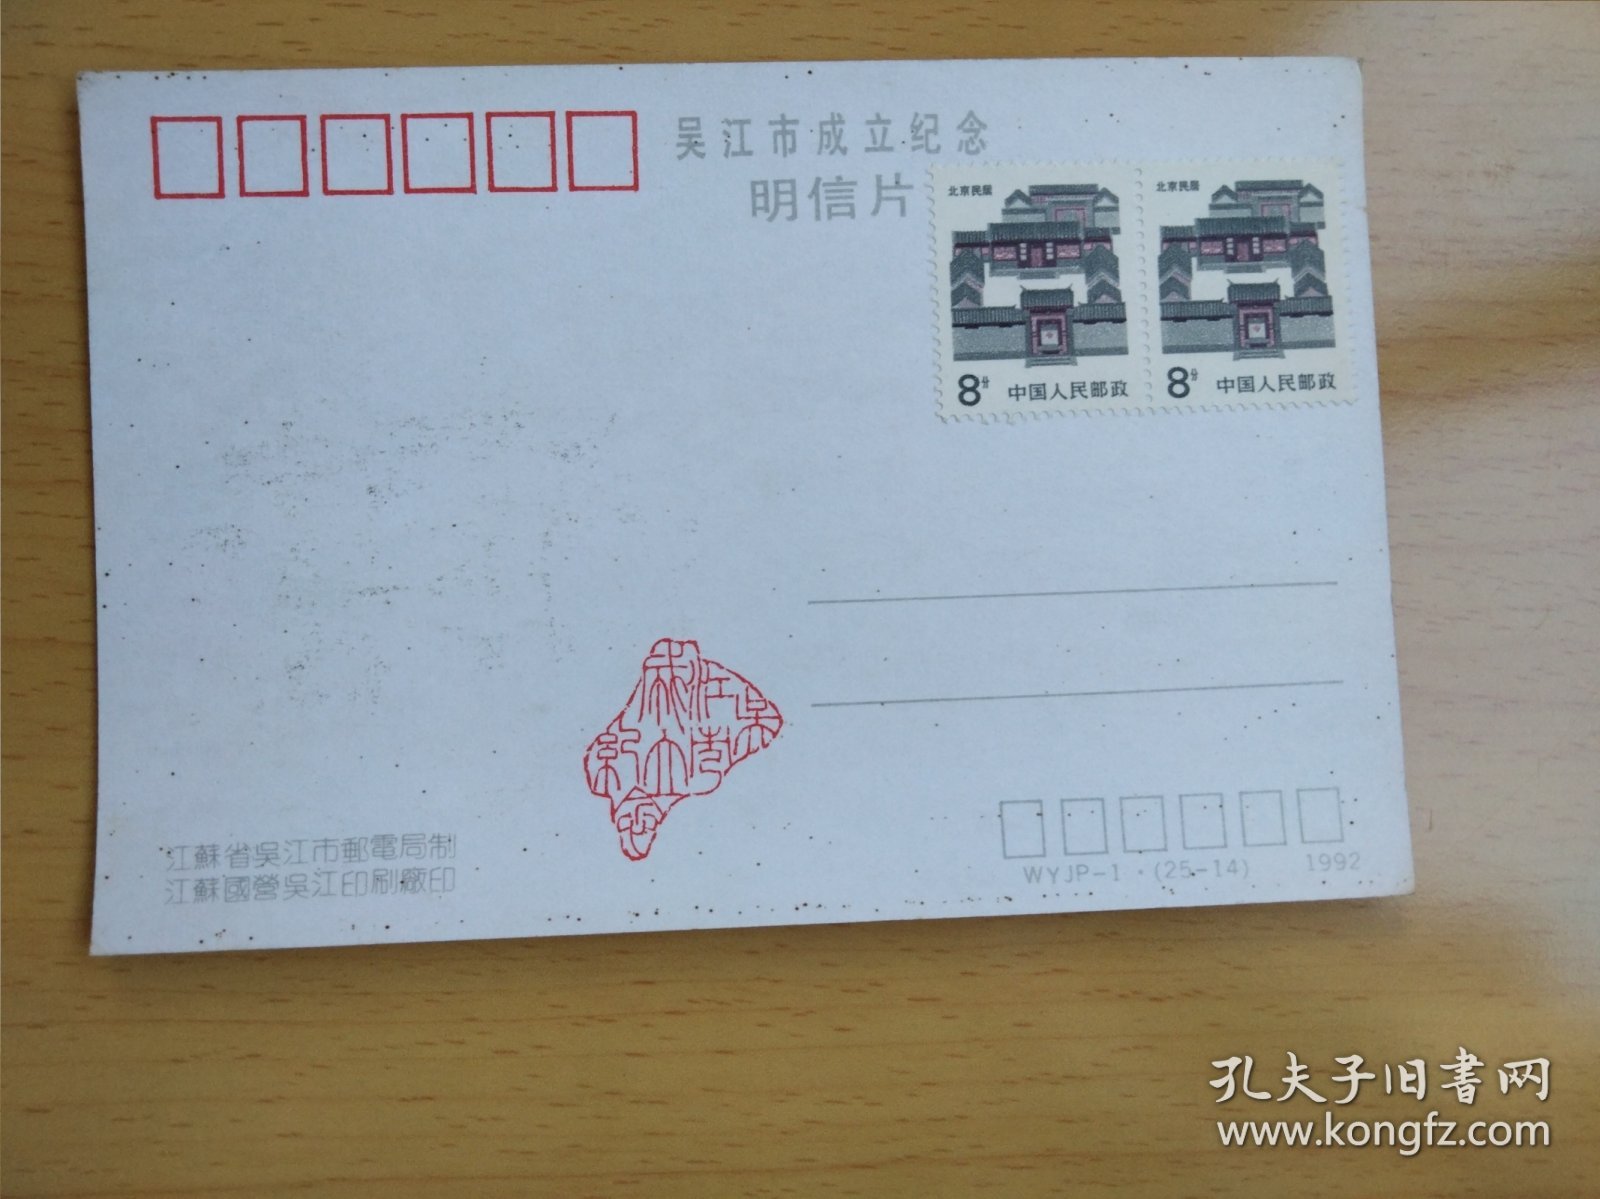 苏州吴江建市纪念 盛泽东方丝绸市场 明信片(帶8分民居邮票2枚)